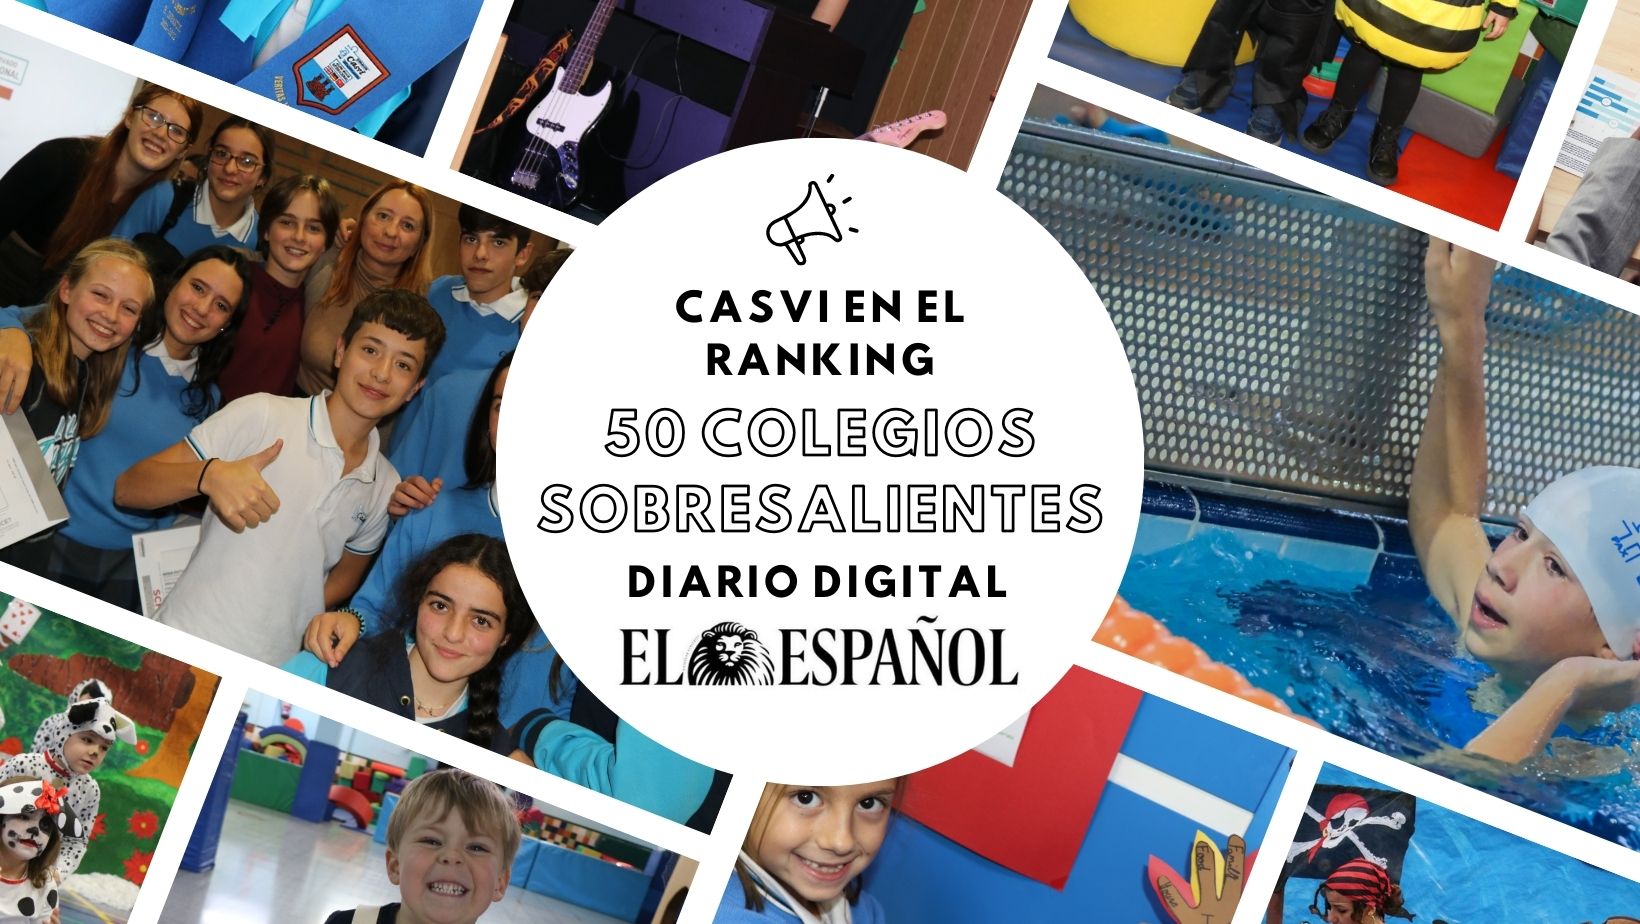 Casvi entre los 50 Mejores Colegios de España de El Español.